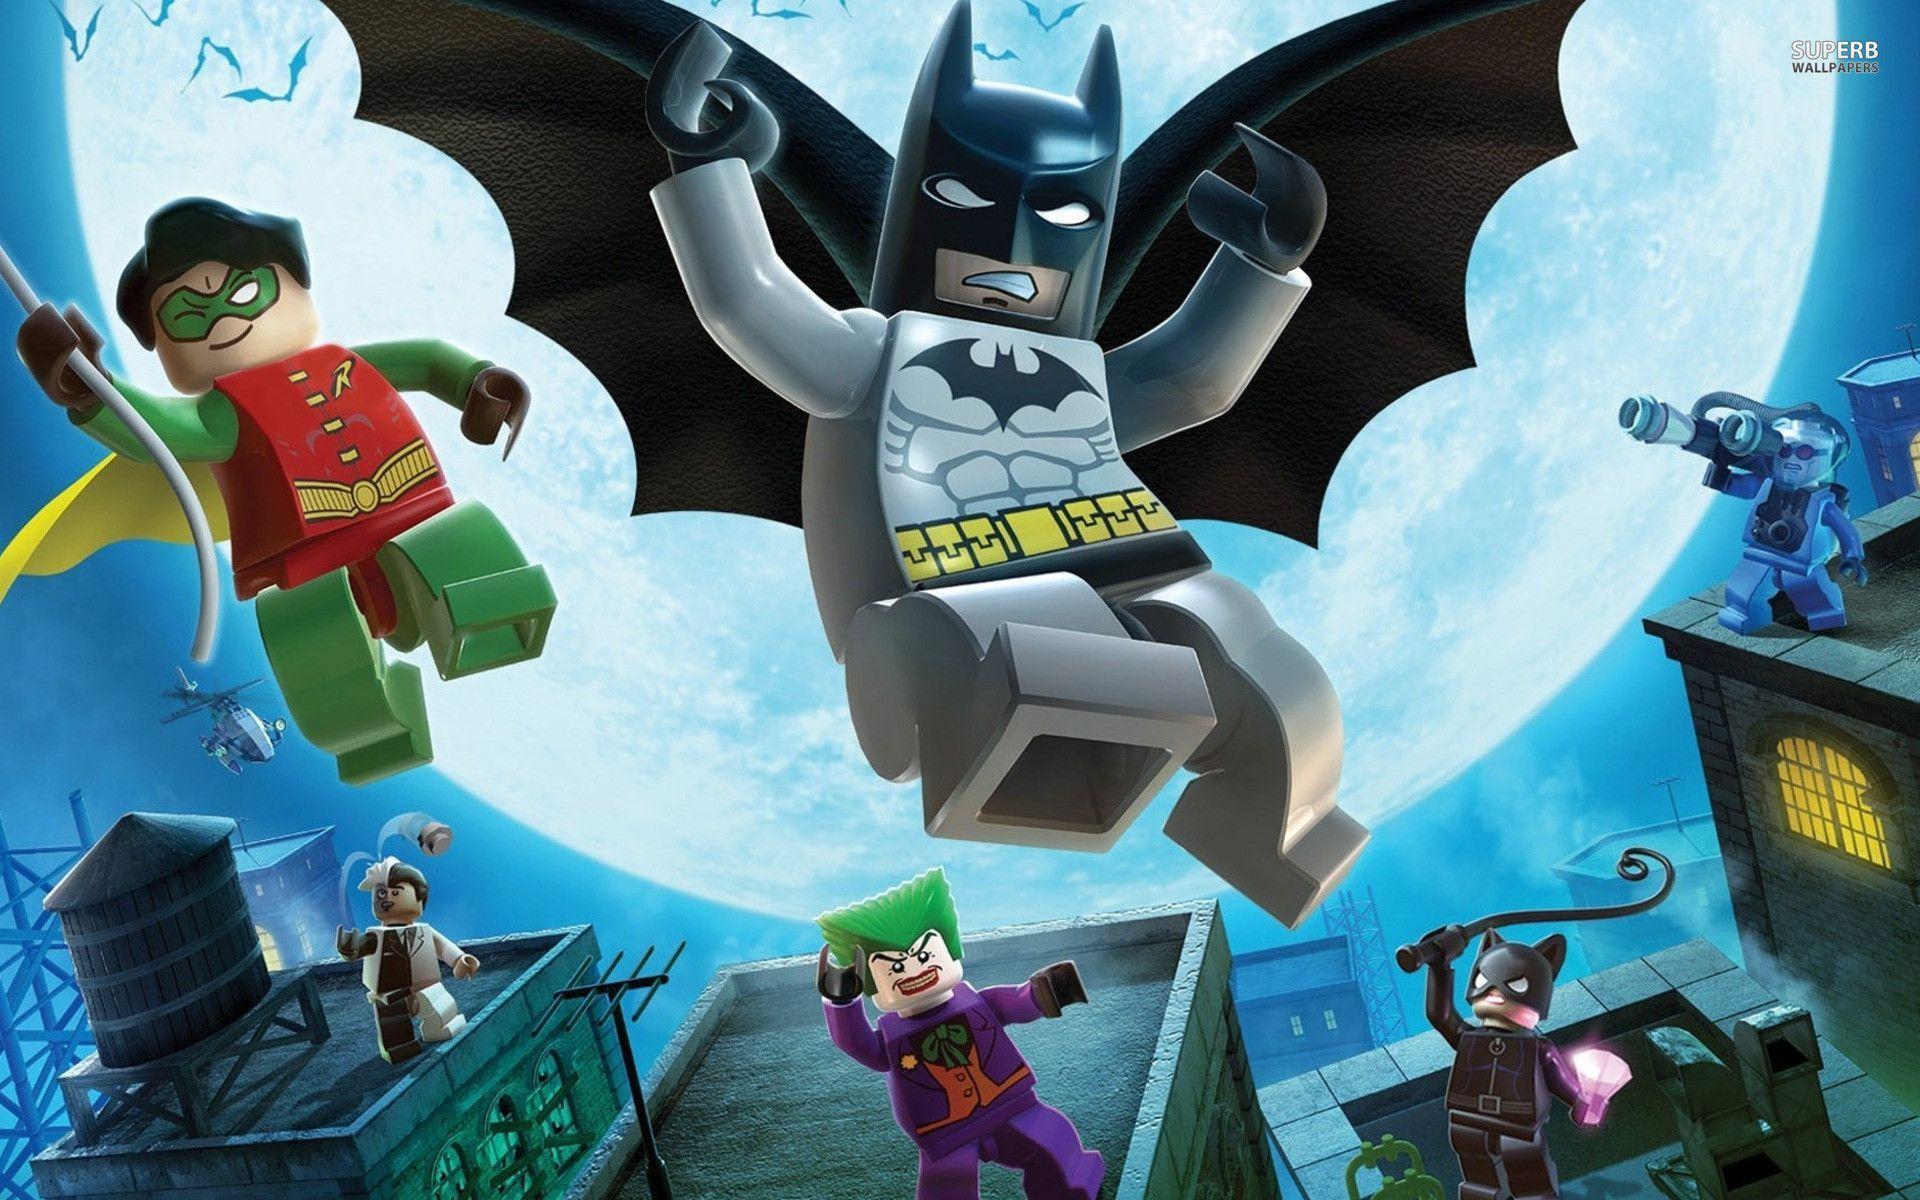 Lego Batman Wallpapers - Wallpaper Cave